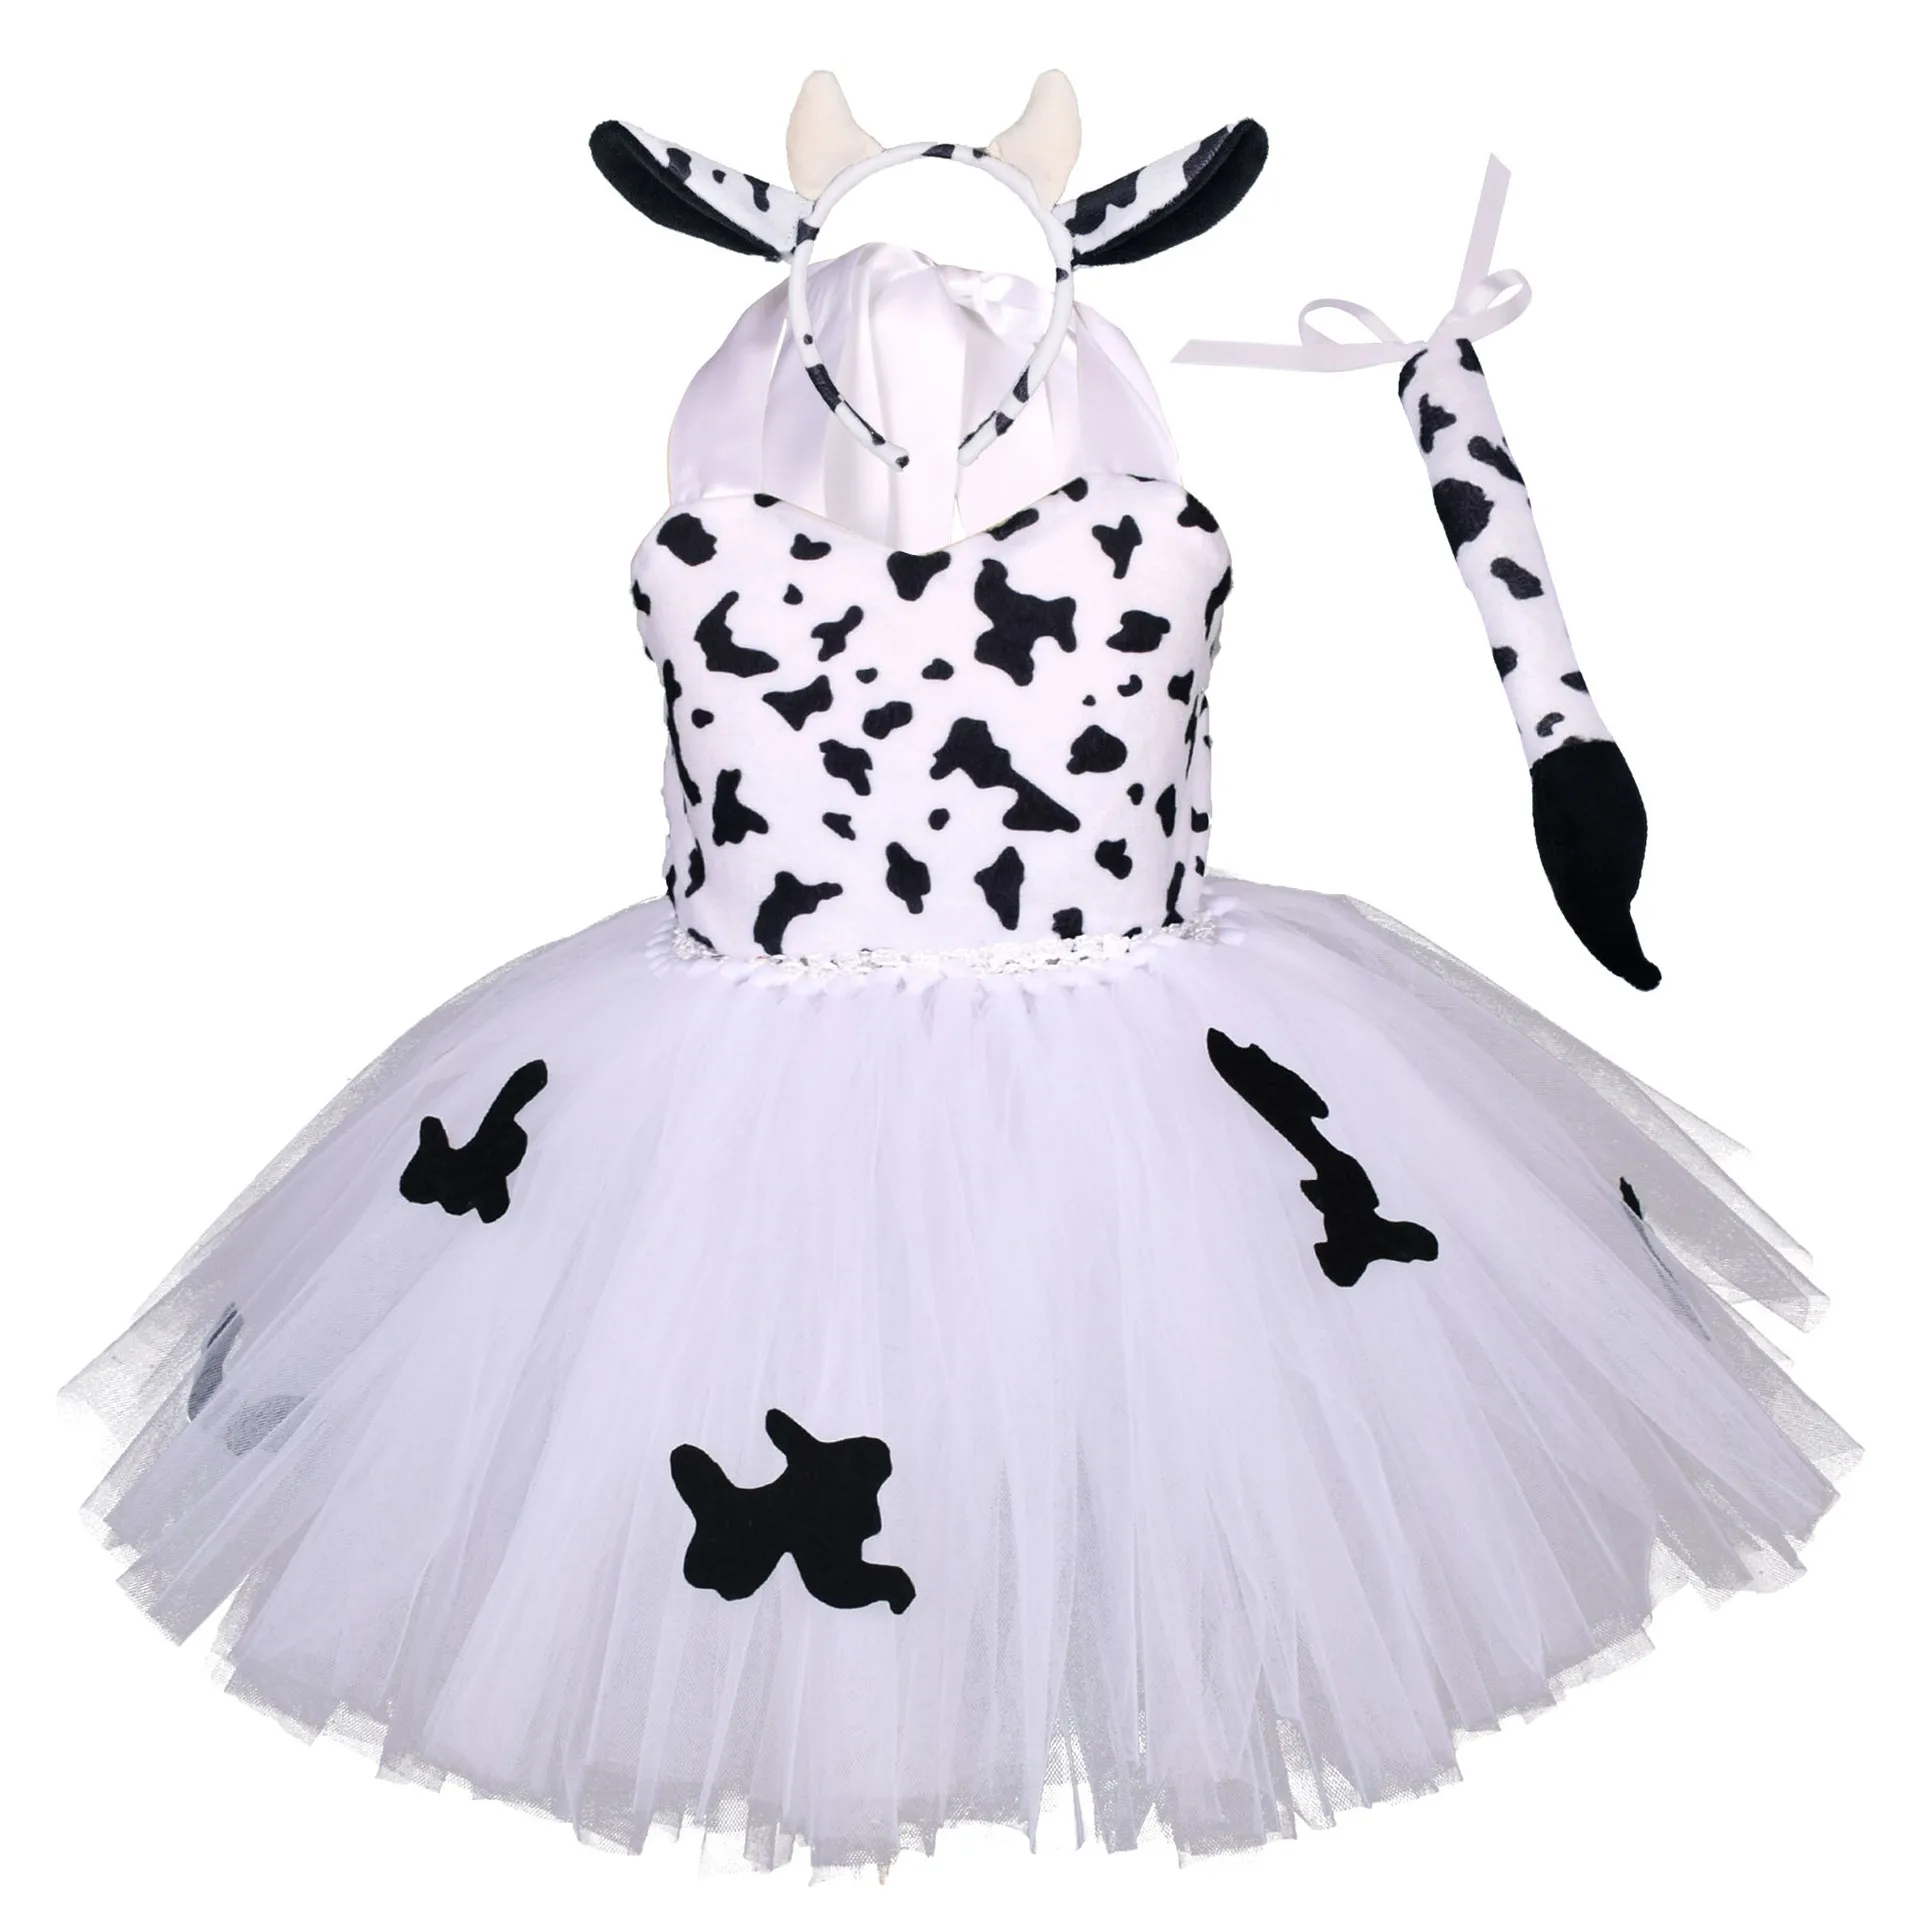 الكرتون الأبقار تأثيري الفتيات توتو فستان الحيوان البقرة تأثيري وتتسابق للأطفال طفل هالوين زي الاطفال الفتيات الملابس فستان